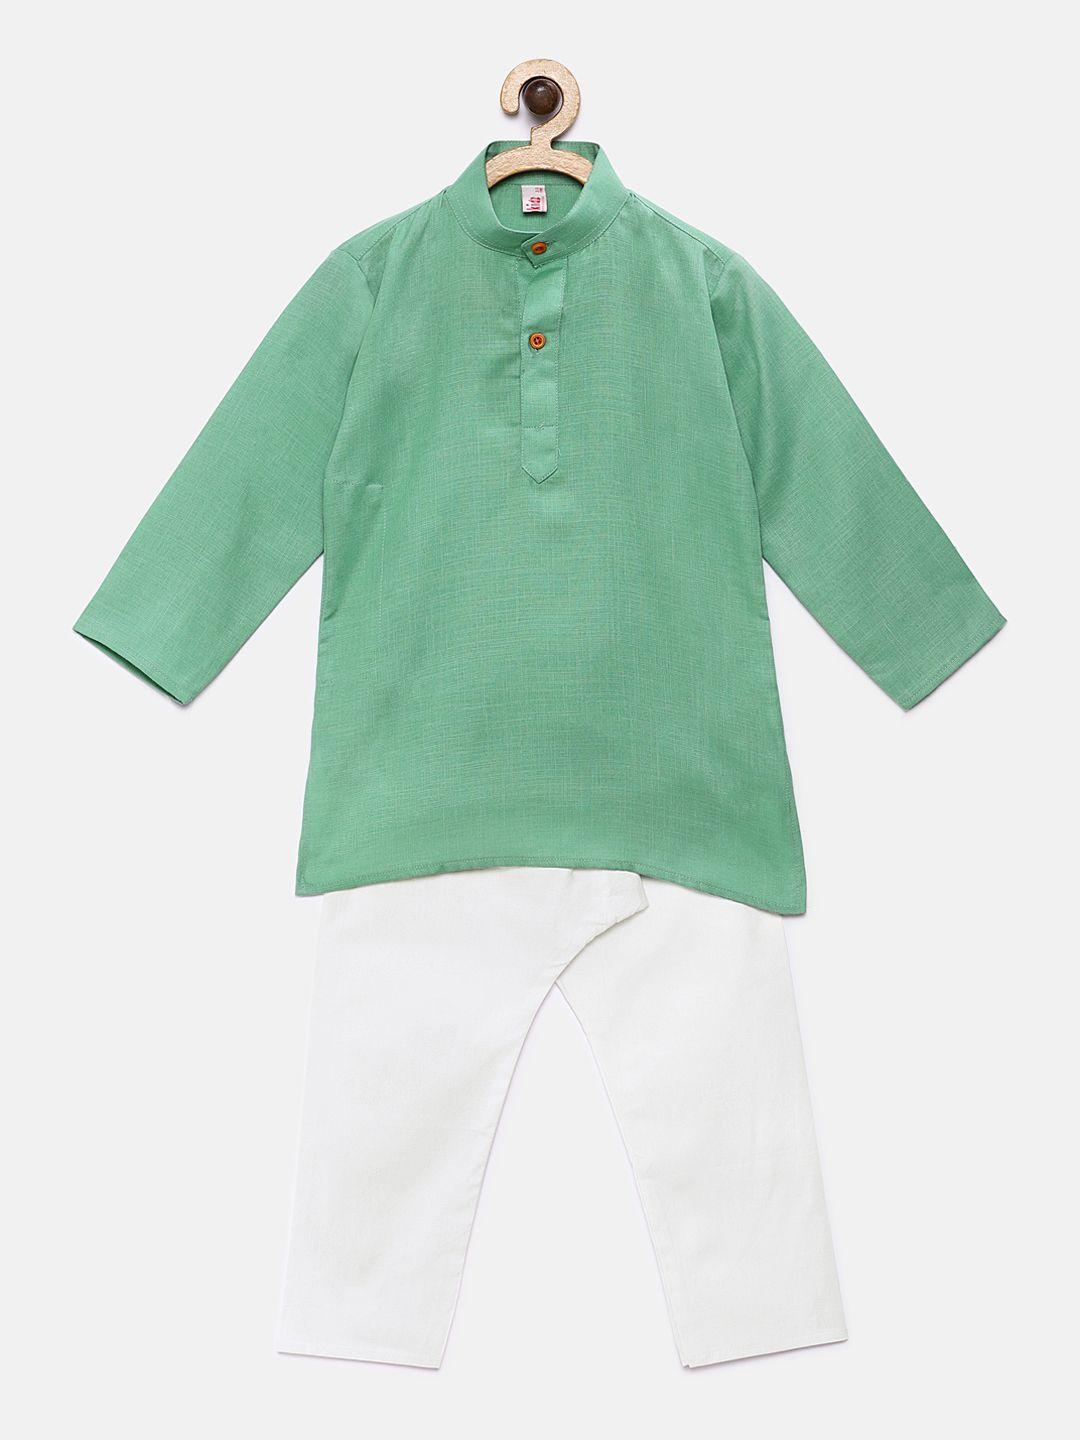 ridokidz boys green solid kurta with pyjamas